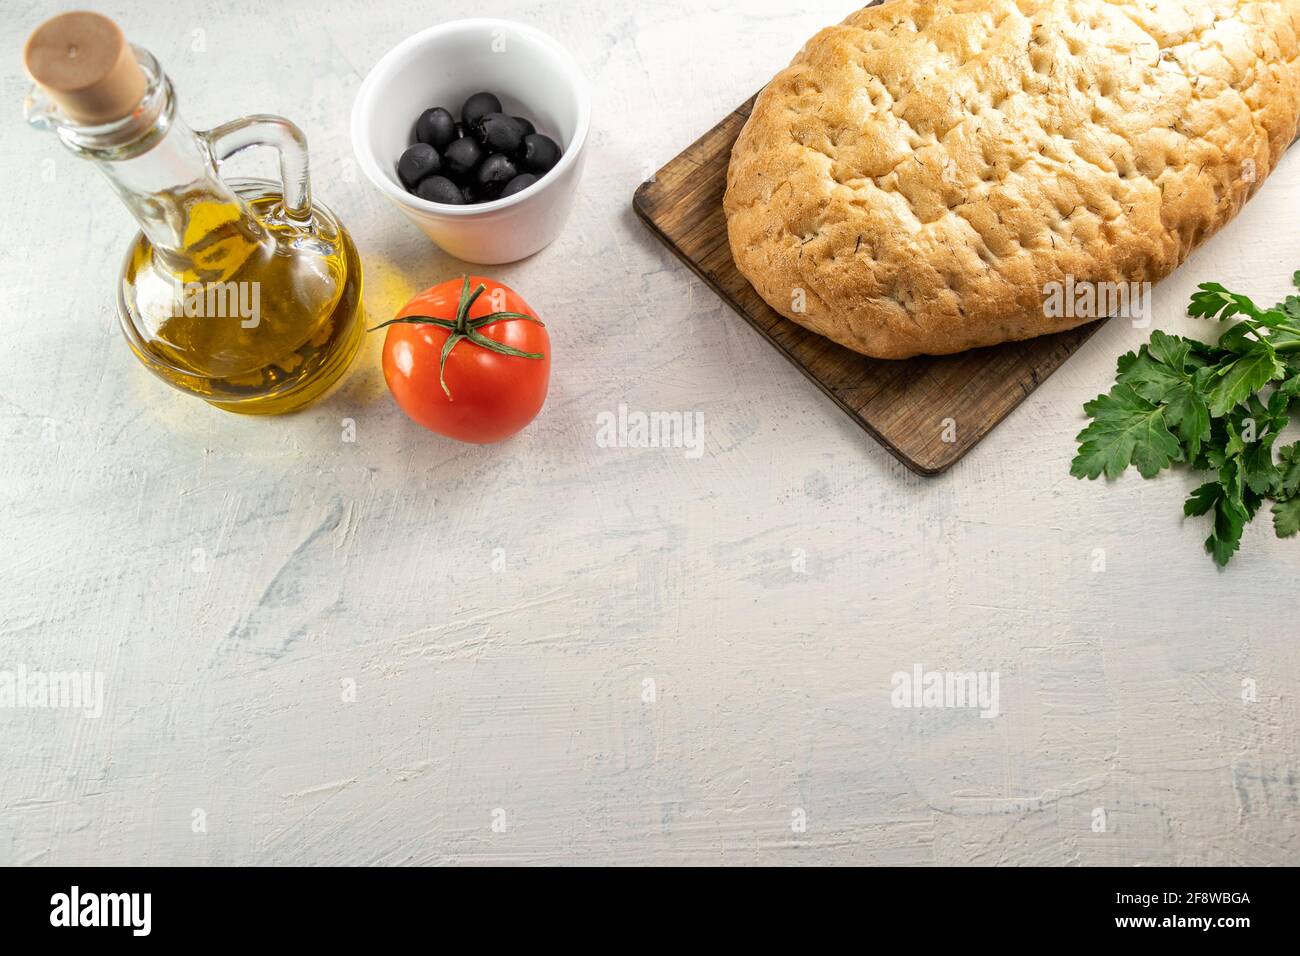 Italienisches Focaccia oder italienisches Brot.frisches, leckeres Brot mit aromatischen Kräutern auf Holzbrett neben schwarzen Oliven, Tomaten, Petersilie und Olivenöl auf Weiß Stockfoto